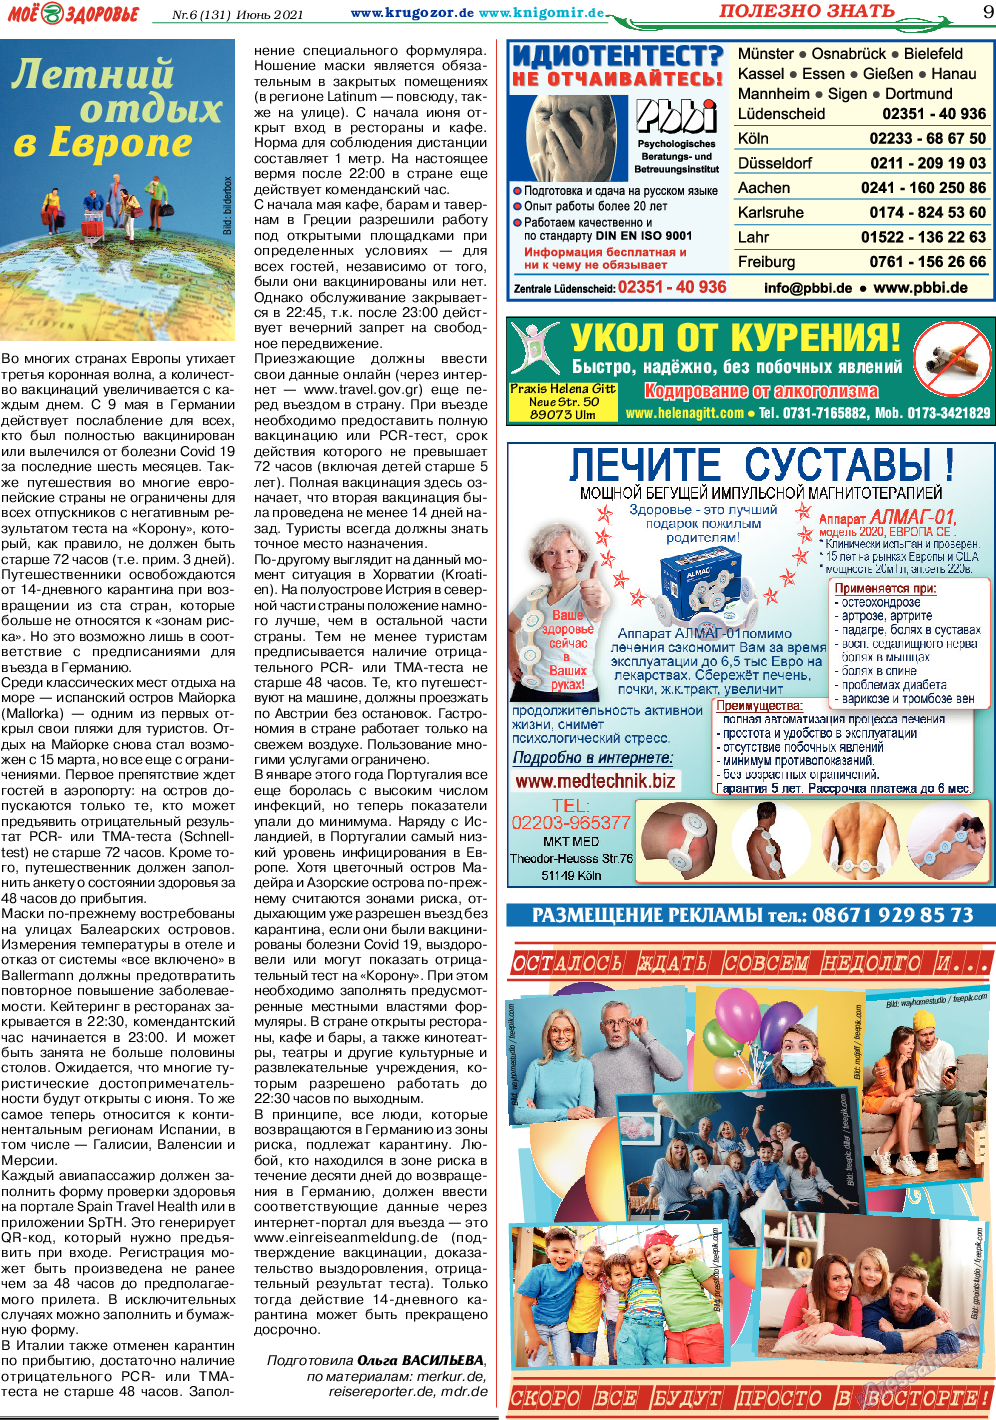 Кругозор, газета. 2021 №6 стр.9